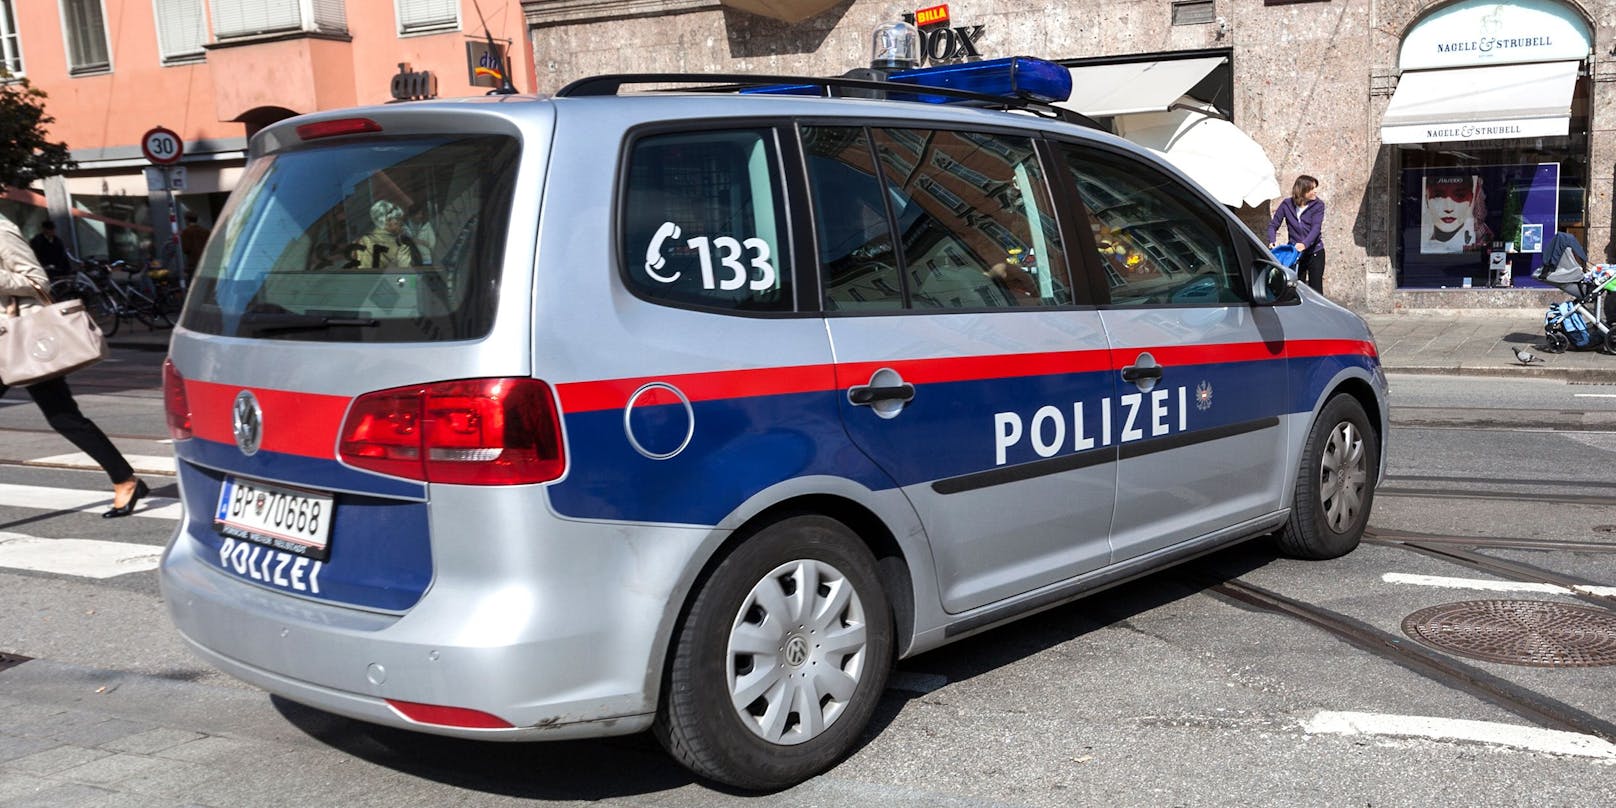 Die Innsbrucker Polizei kam einem Sozialleistungsbetrüger auf die Schliche. (Symbolbild)